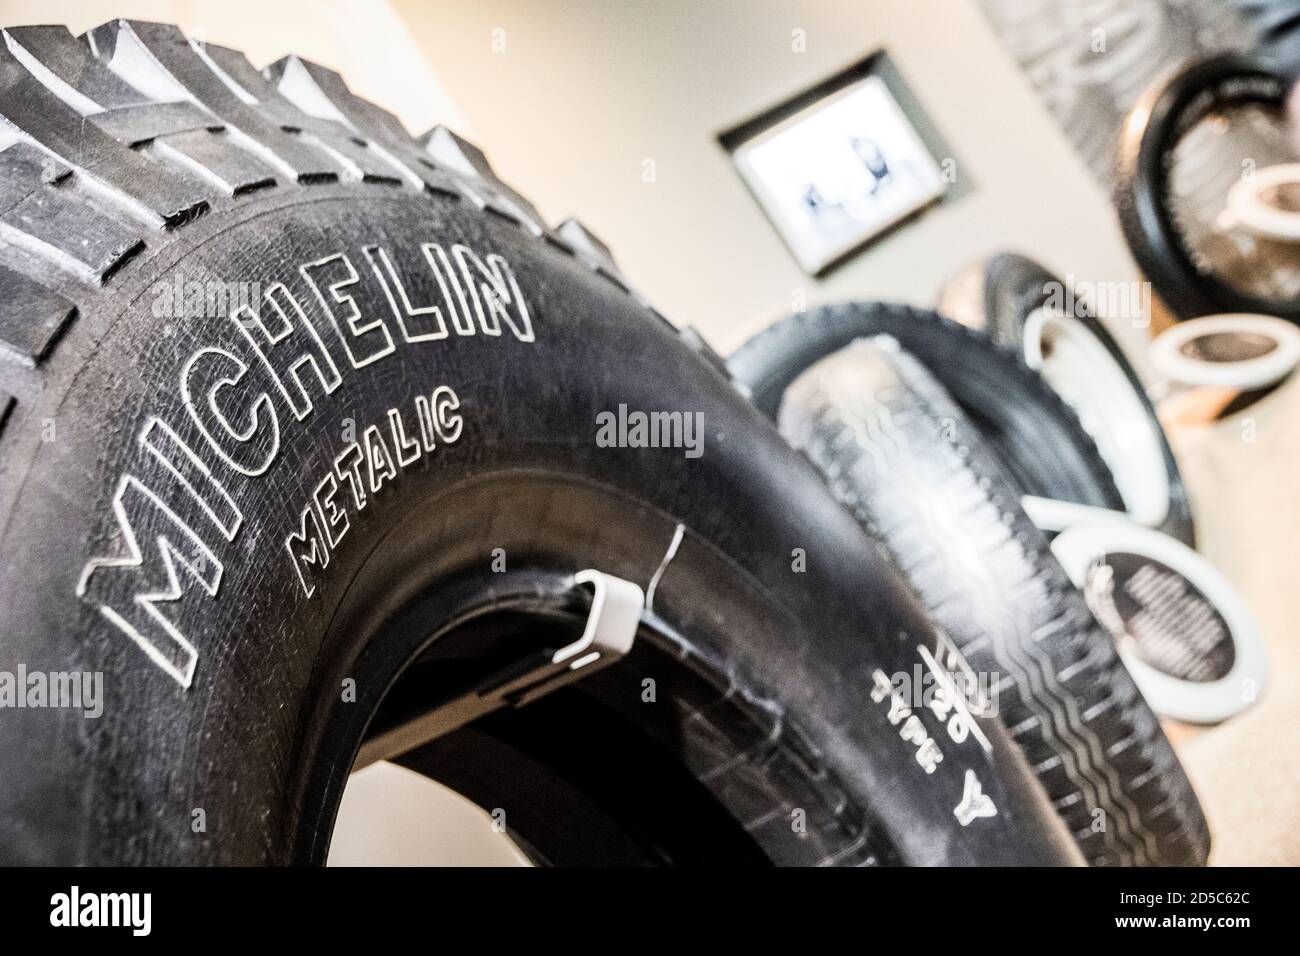 Michelin reifen -Fotos hoher Alamy Auflösung logo in und – -Bildmaterial